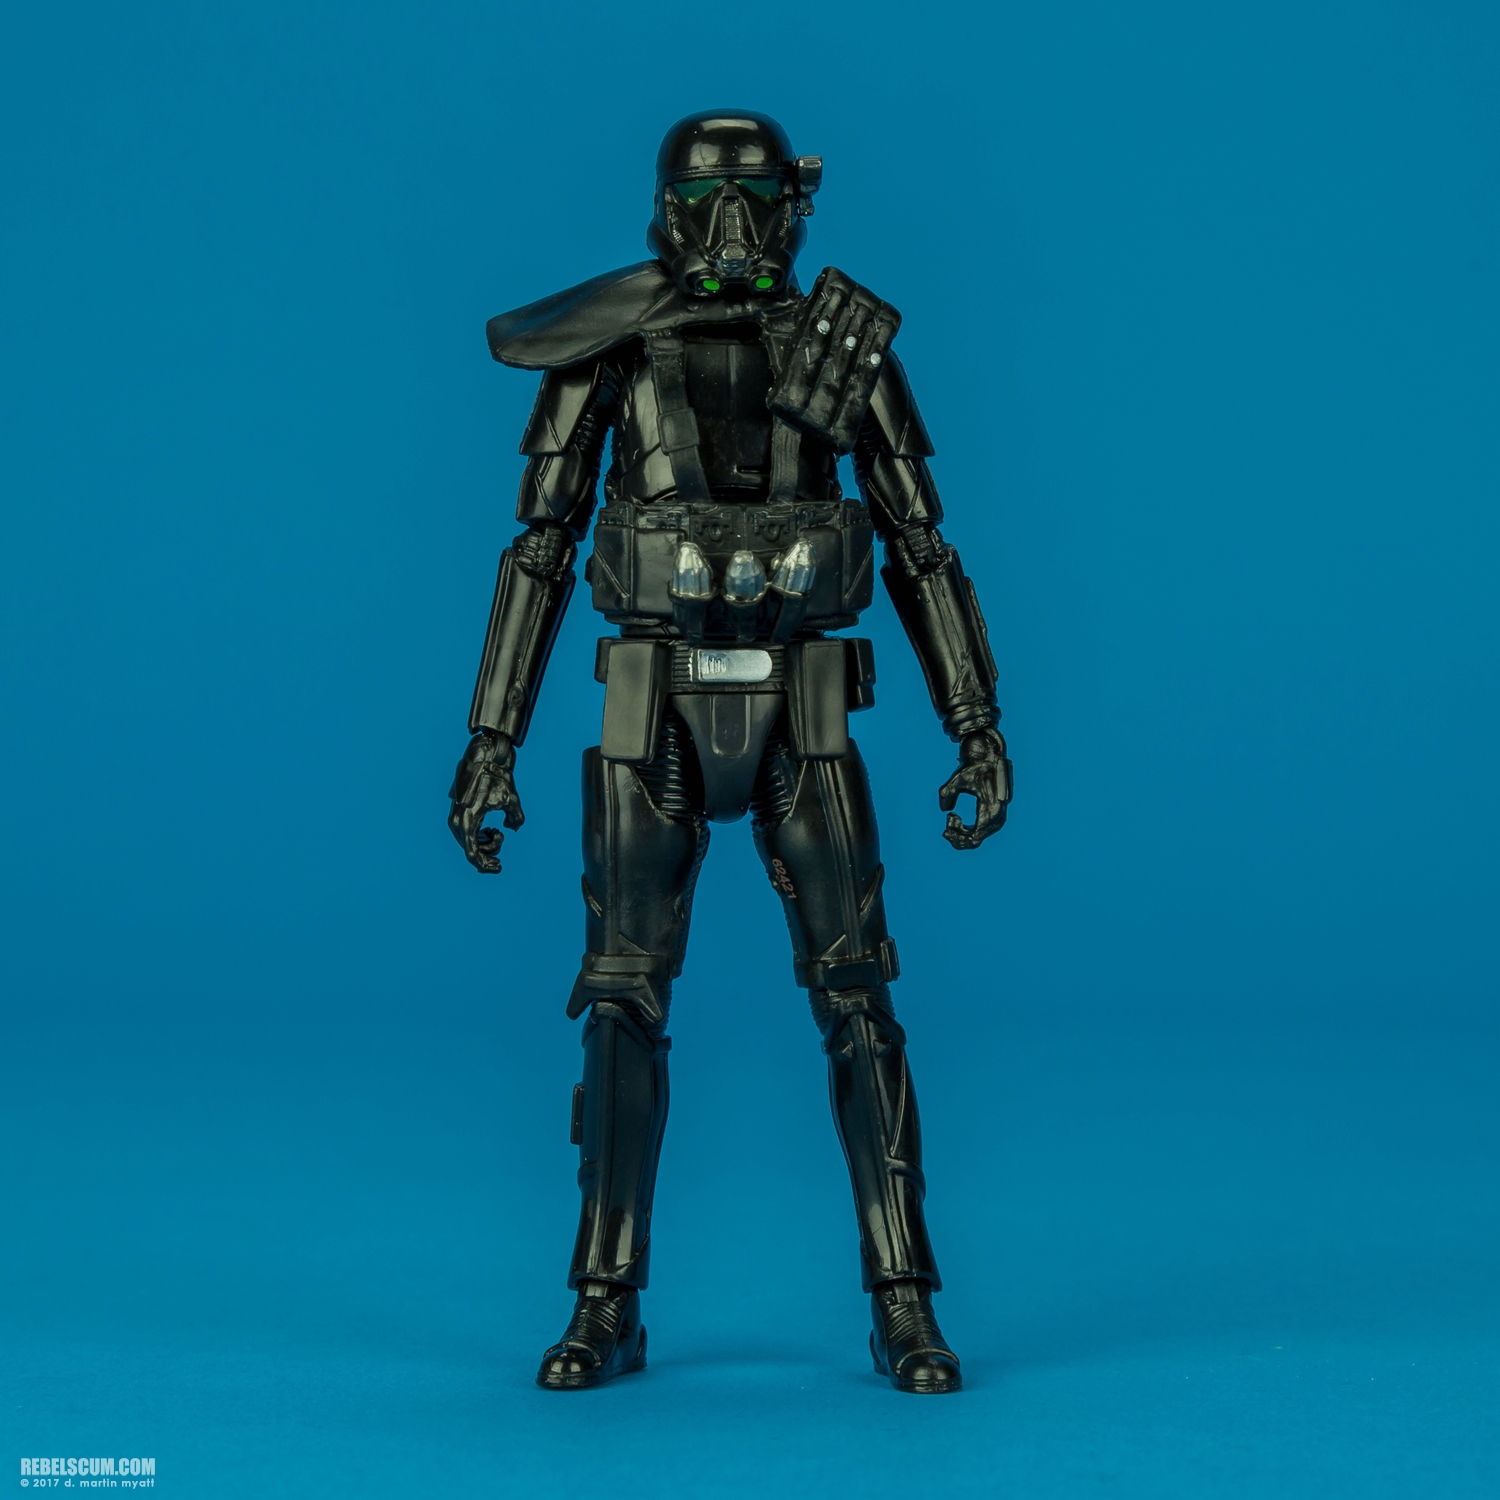 Imperial-Death-Trooper-The-Black-Series-C0663-B4054-005.jpg